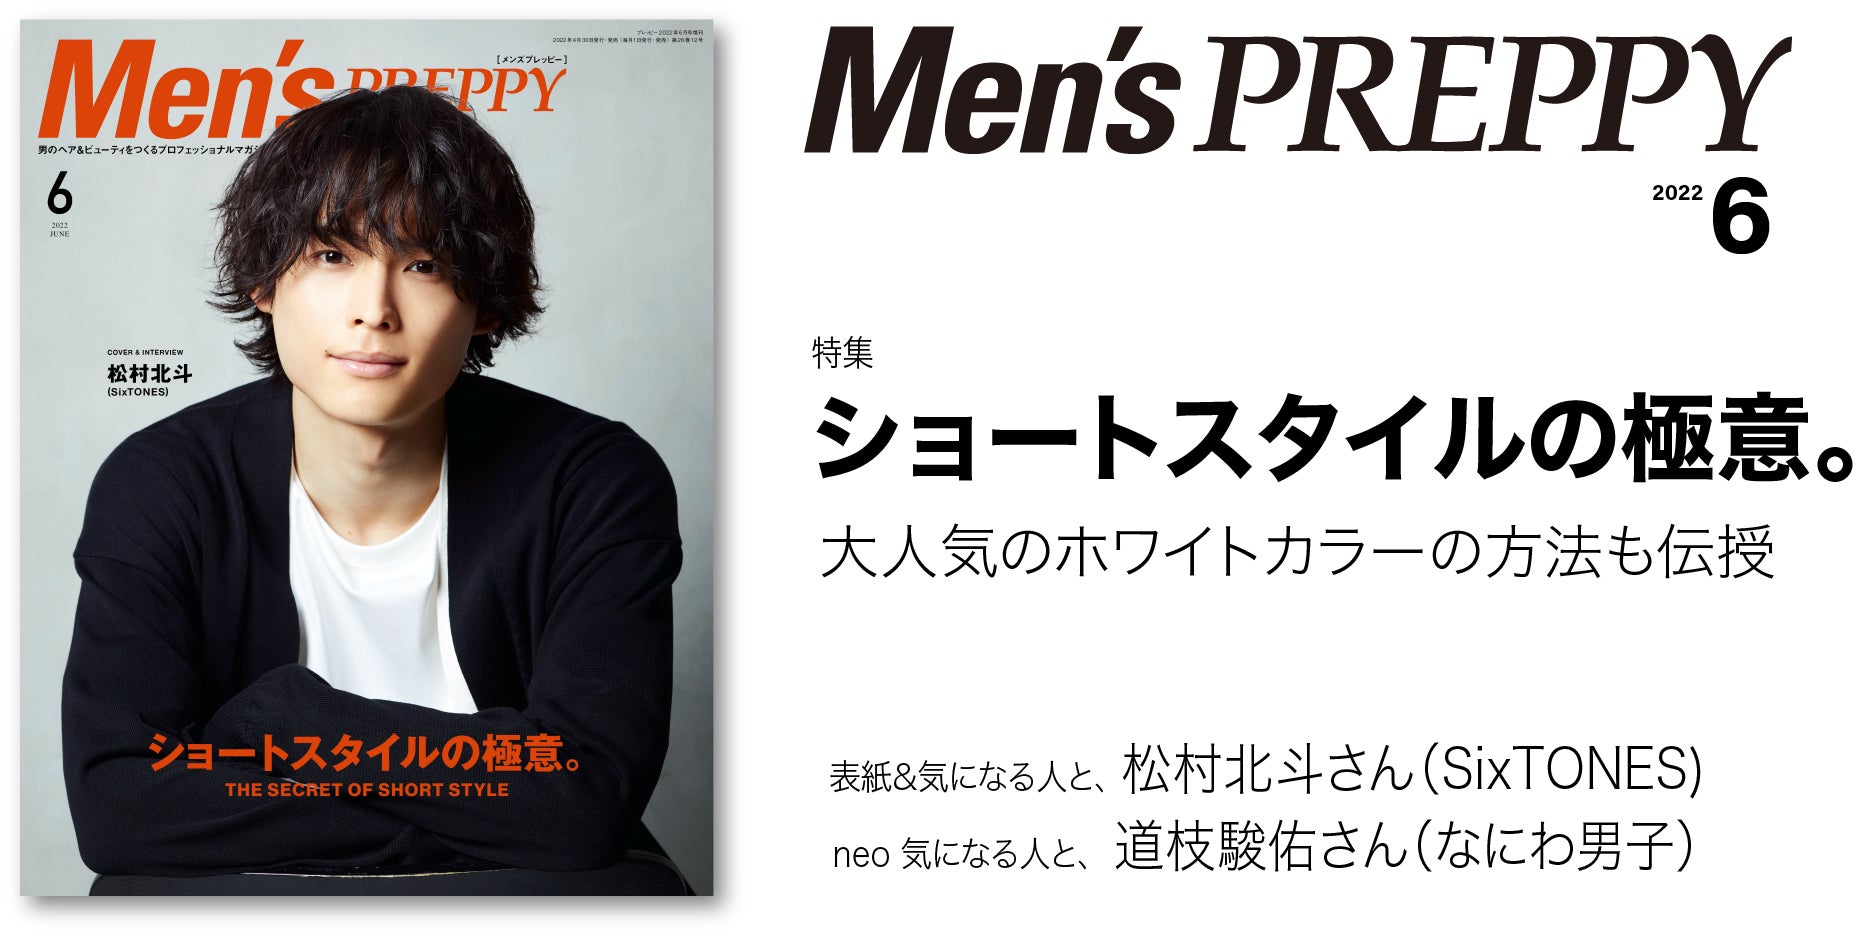 メンズショートの注目トレンドをご紹介！『Men’s PREPPY』6月号「ショートスタイルの極意。」は4/30発売。注目のホワイトカラー施術テクと成功のポイントも伝授します。